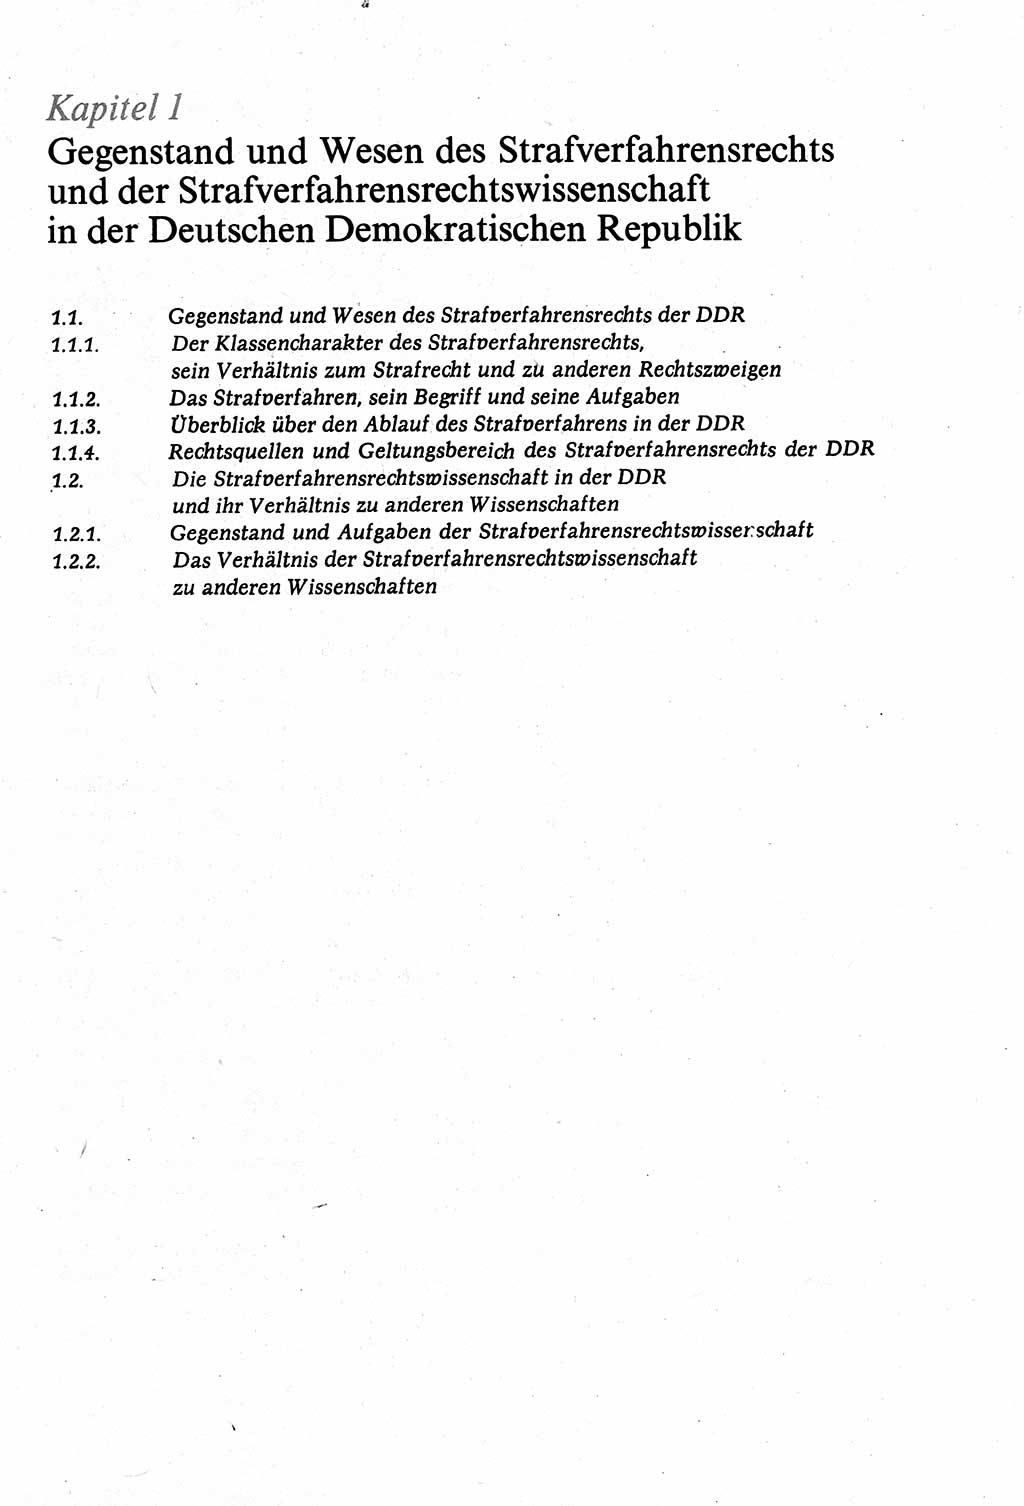 Strafverfahrensrecht [Deutsche Demokratische Republik (DDR)], Lehrbuch 1977, Seite 19 (Strafverf.-R. DDR Lb. 1977, S. 19)